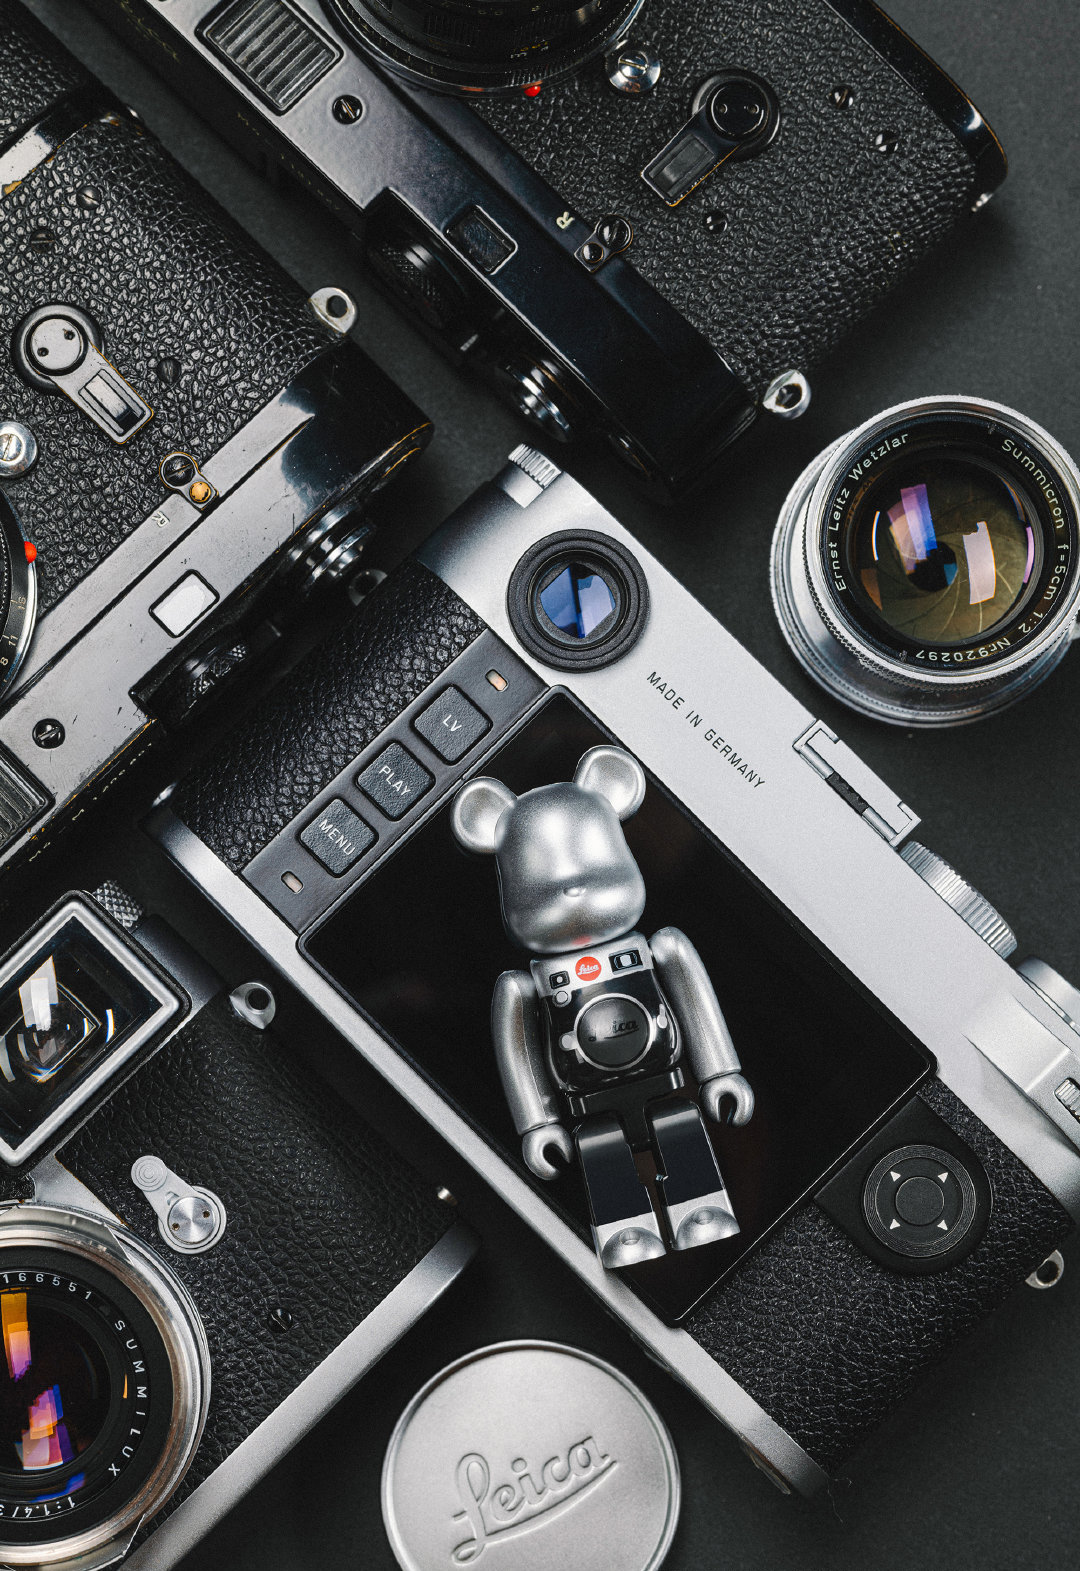 Bạn là một người yêu thích nhiếp ảnh, đặc biệt là máy Leica? Hãy ghé qua và chiêm ngưỡng ngay bộ sưu tập be@rbrick leica, nơi mà những chú gấu bearbrick được trang trí theo phong cách của máy ảnh Leica đẳng cấp.